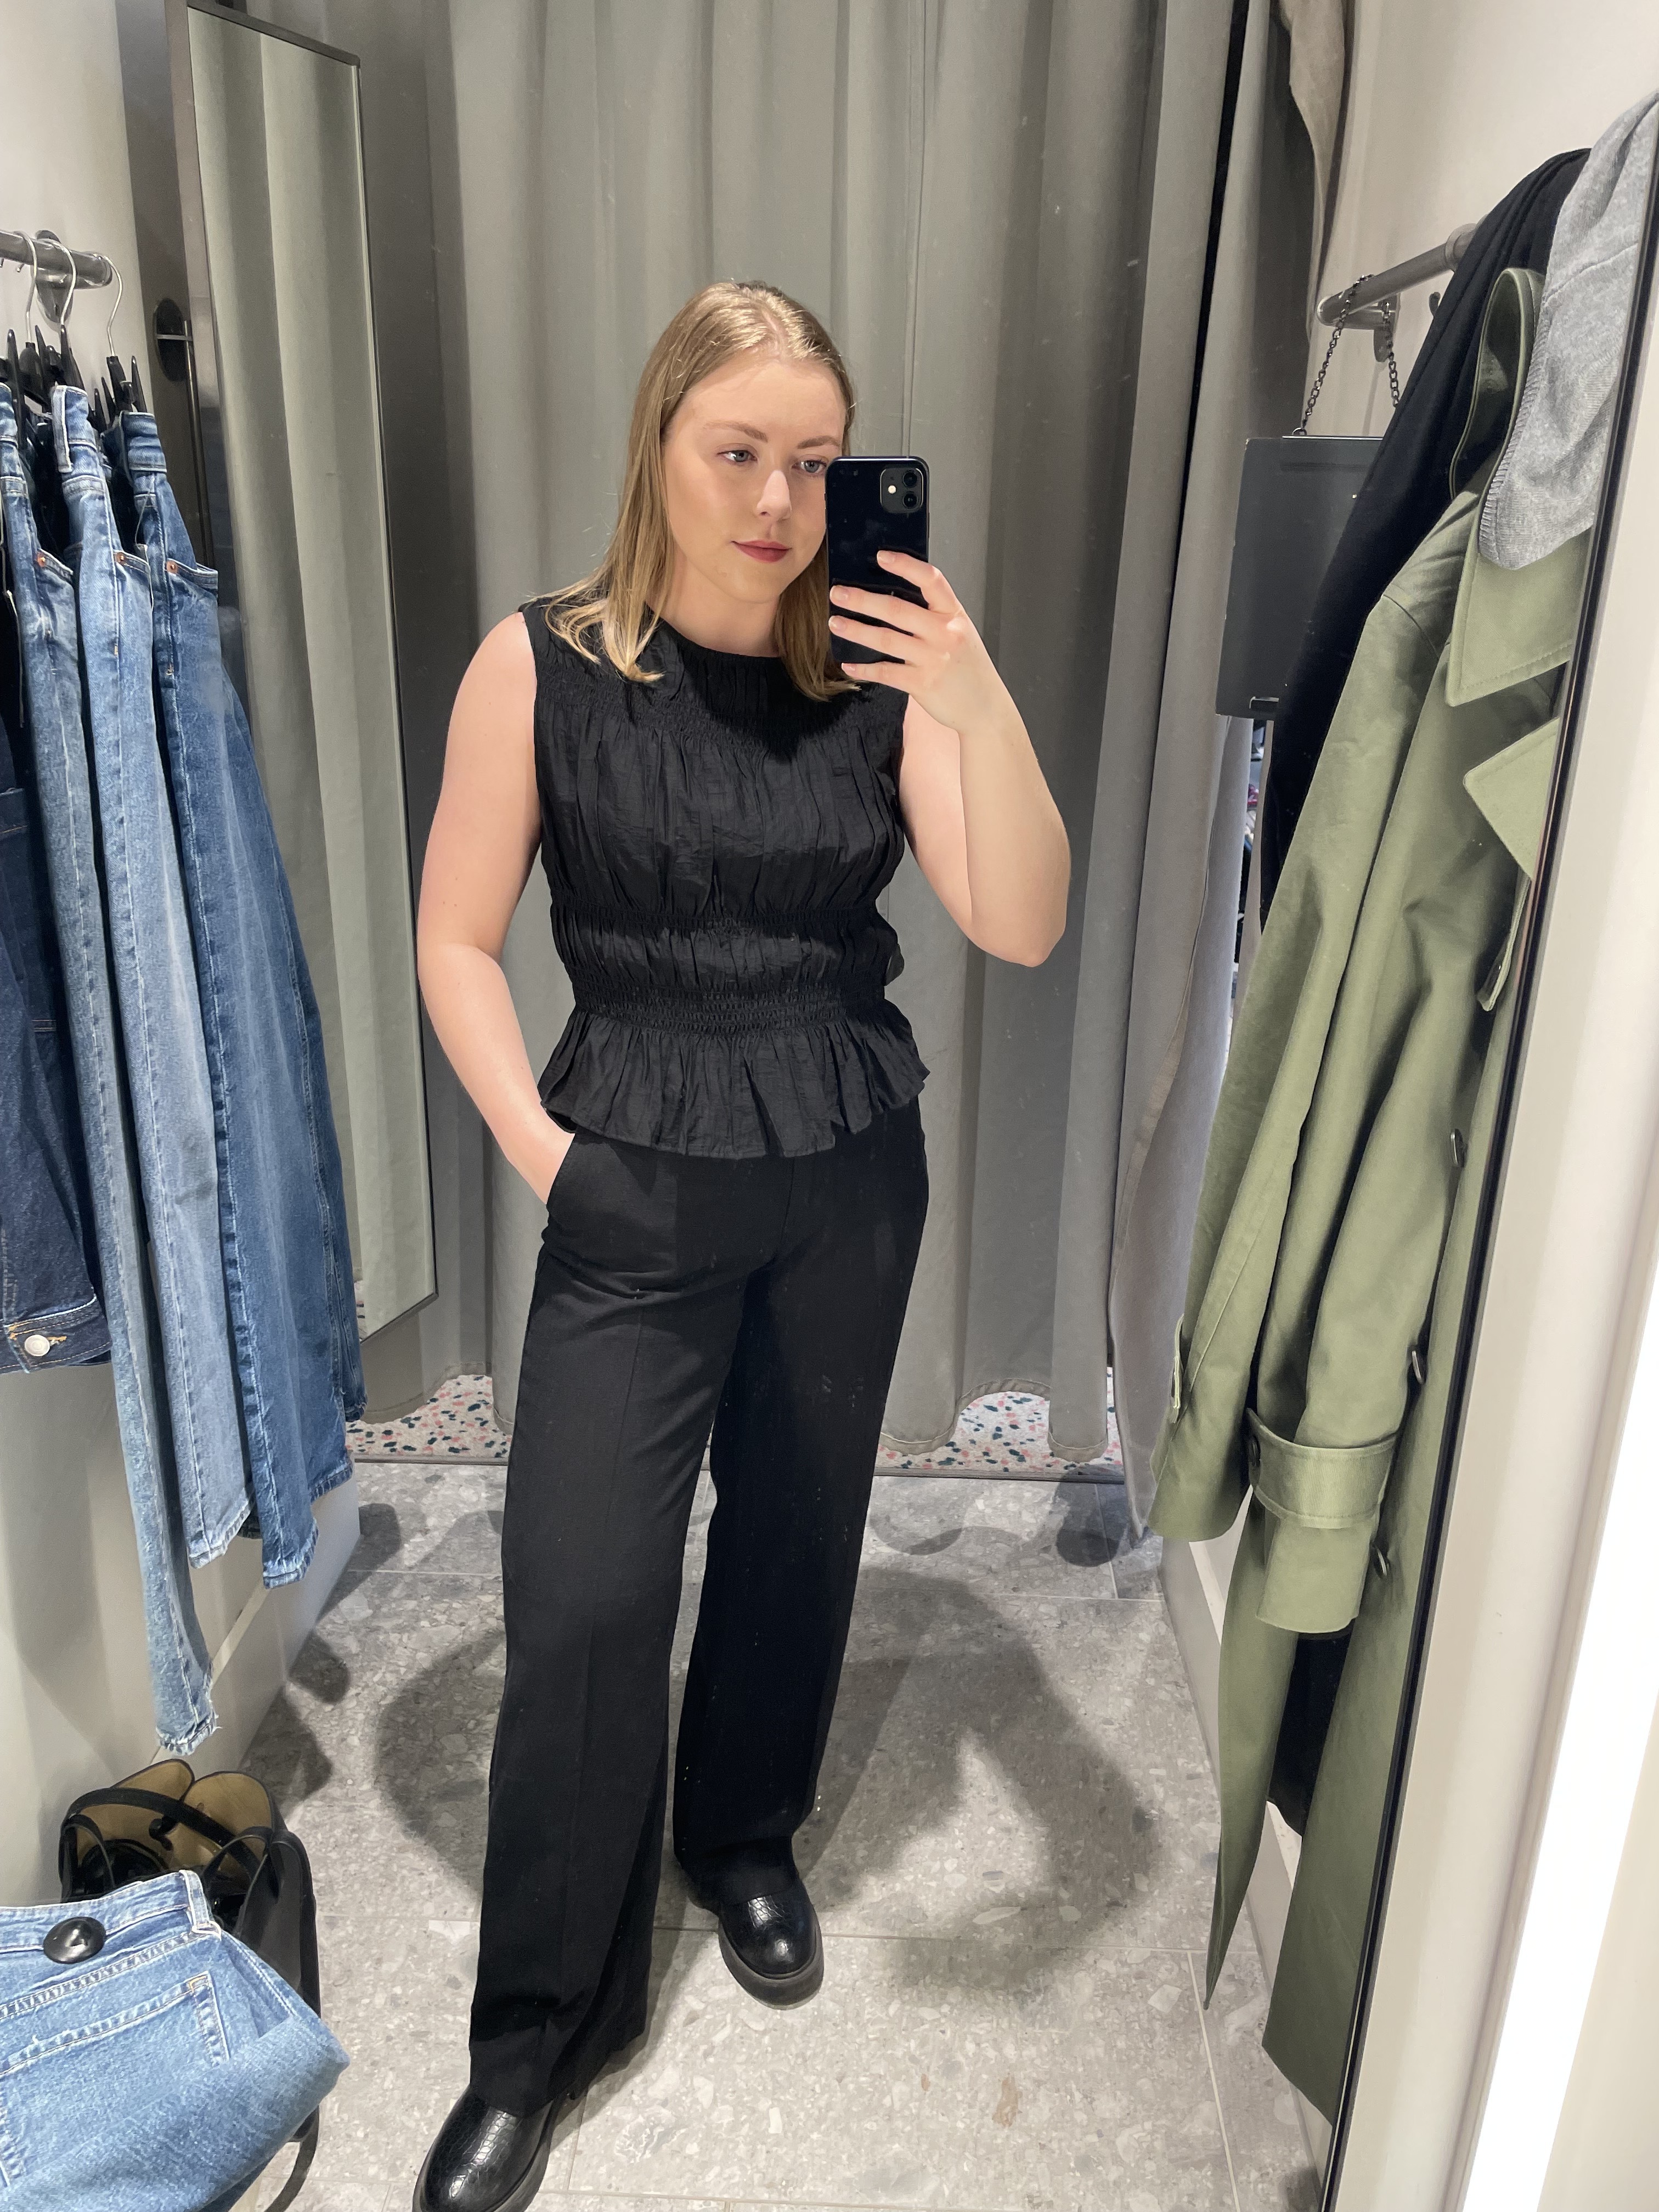 Woman in dressing room wears black top, black trousers